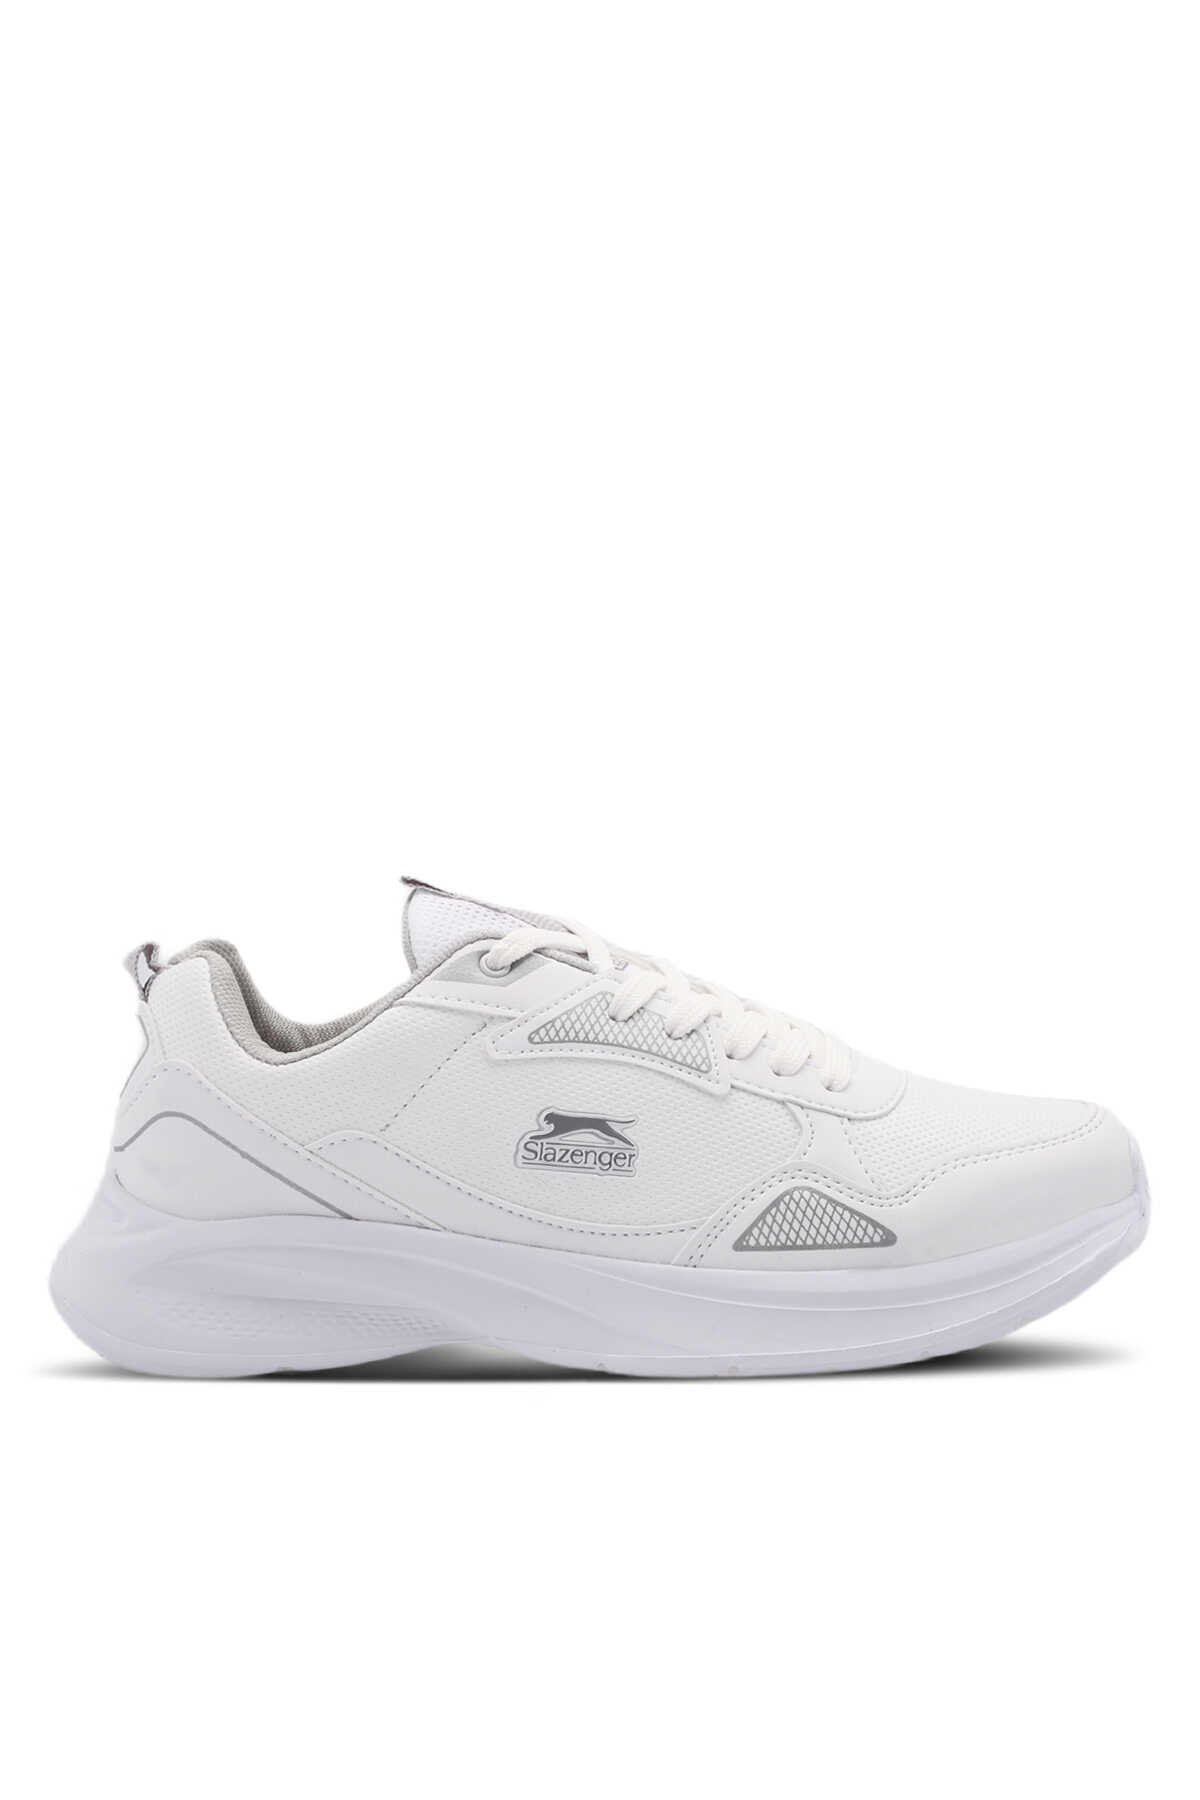 Slazenger - Slazenger KAYLA Sneaker Erkek Ayakkabı Beyaz